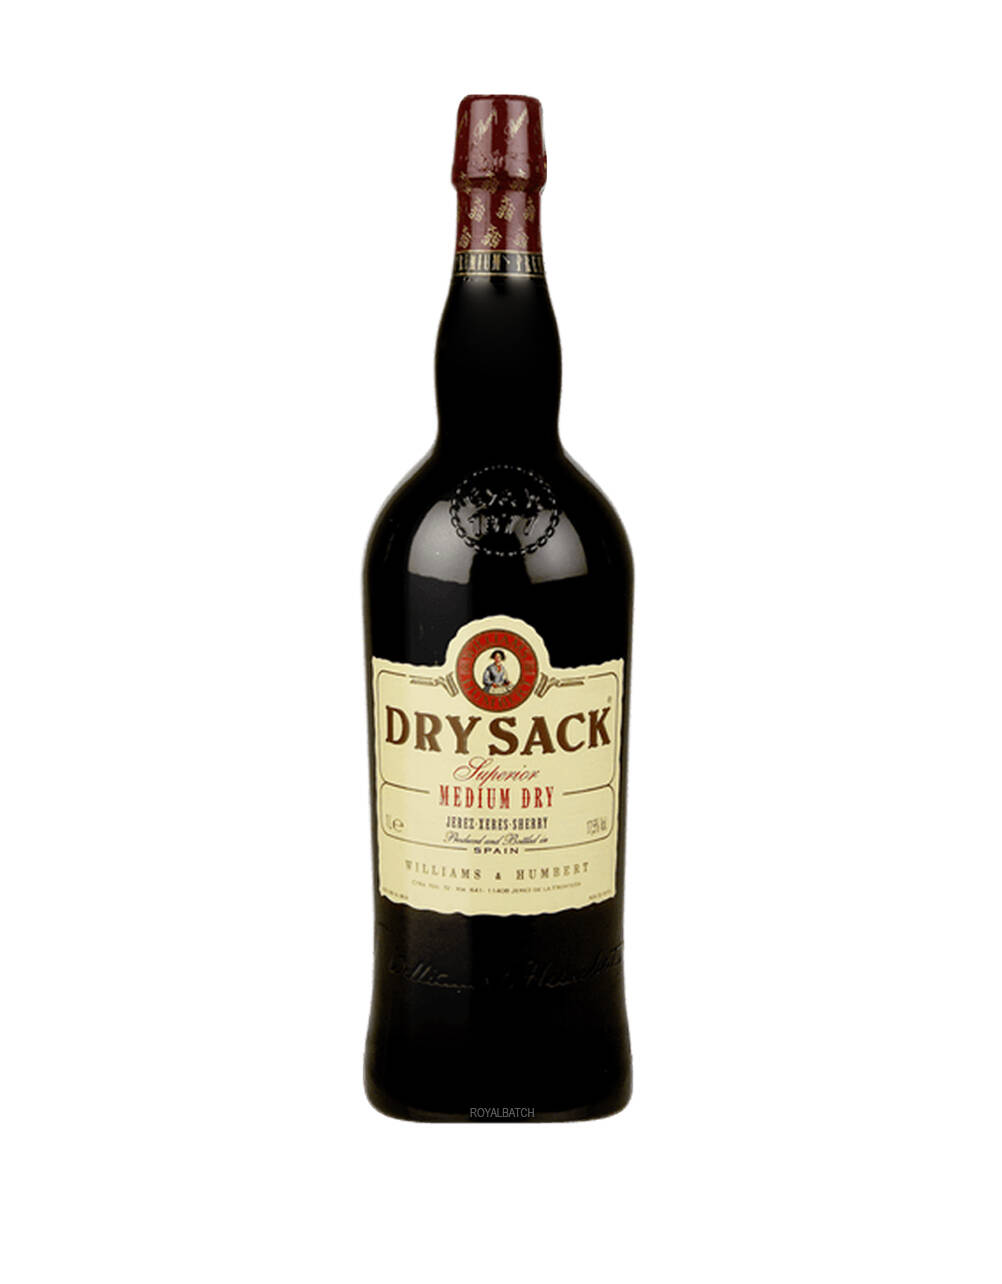 Williams and Humbert Dry Sack Medium Dry Superior Sherry Wine